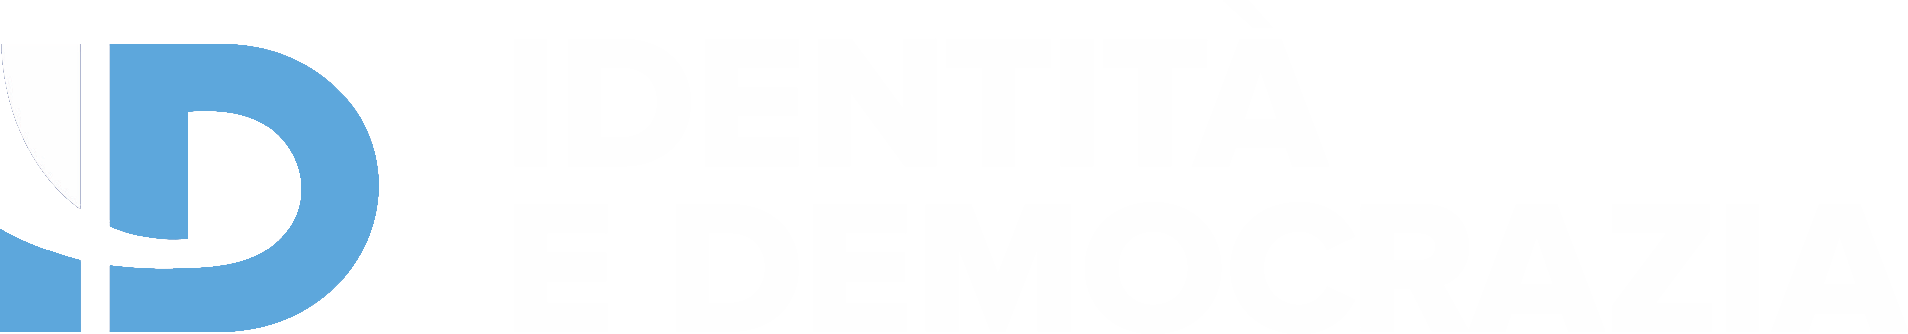 Identità e Democrazia